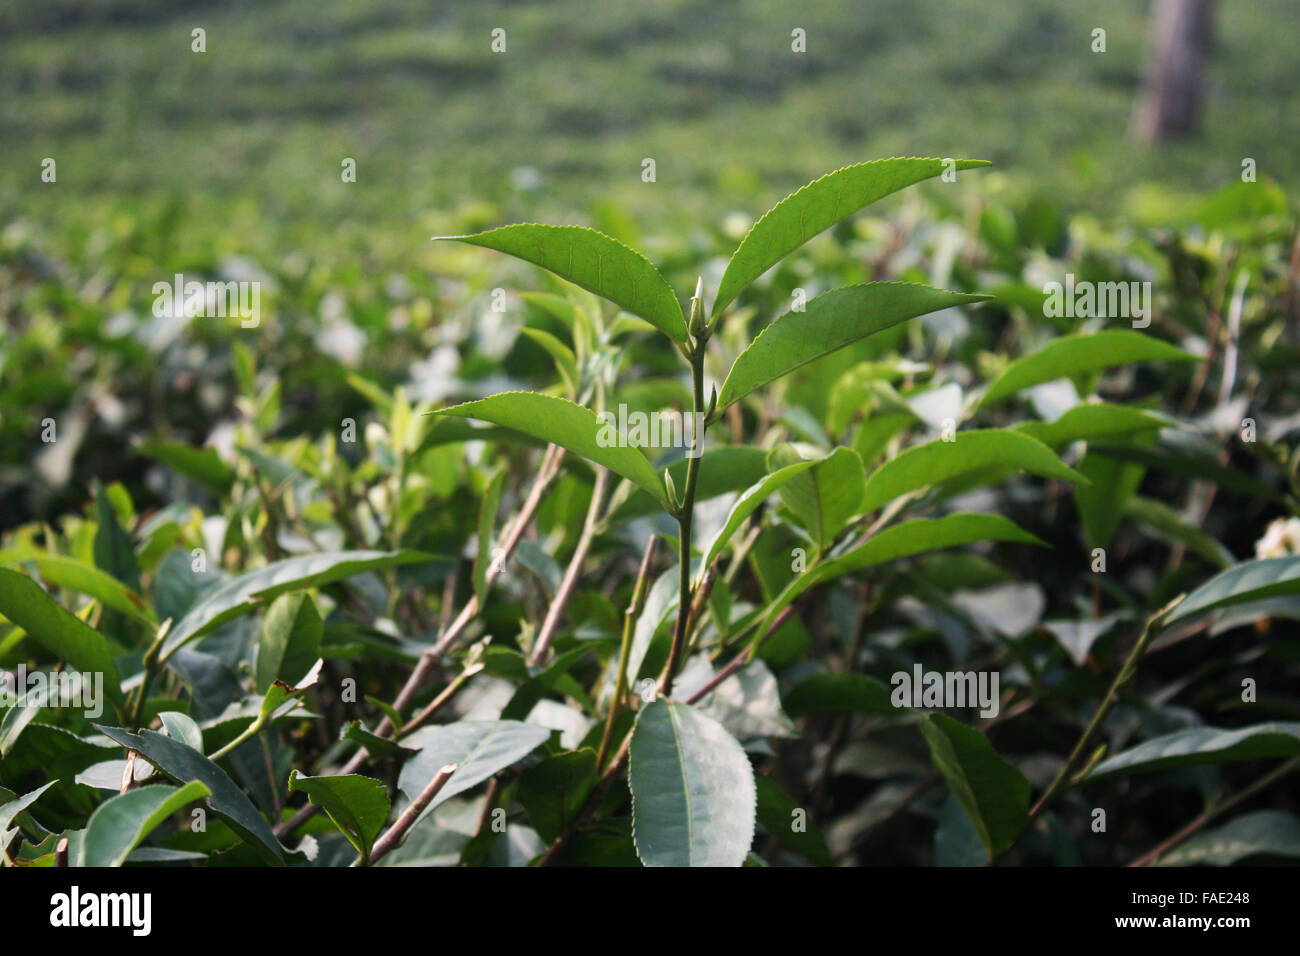 A Tea garden at Jaflong in Sylhet, Bangladesh Stock Photo